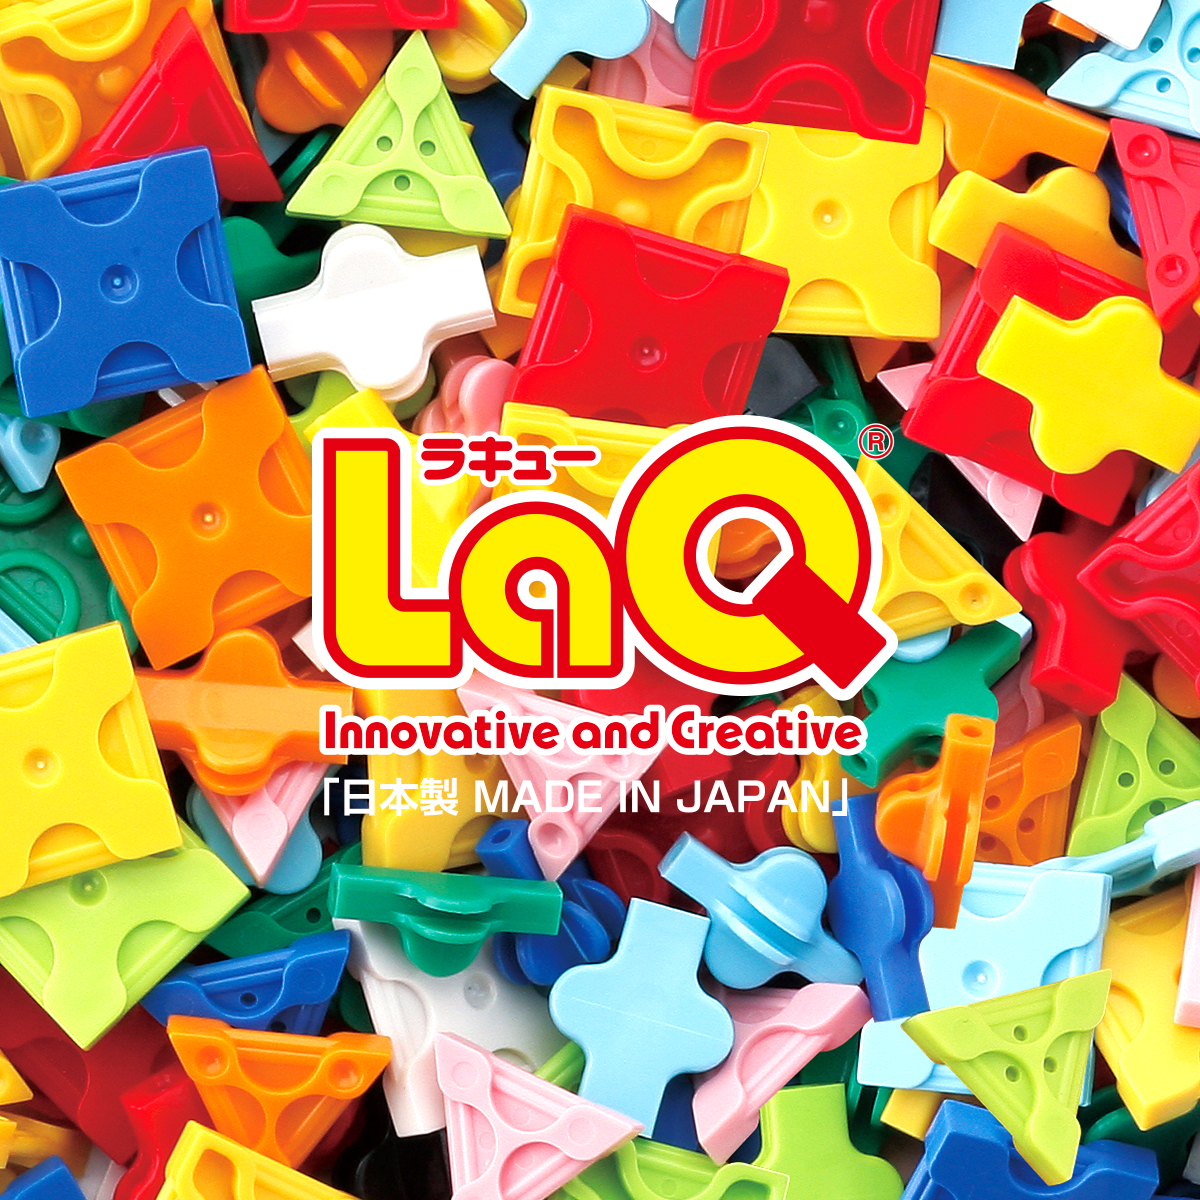 LaQ （ラキュー） : まったく新しい発想から生まれたパズルブロック